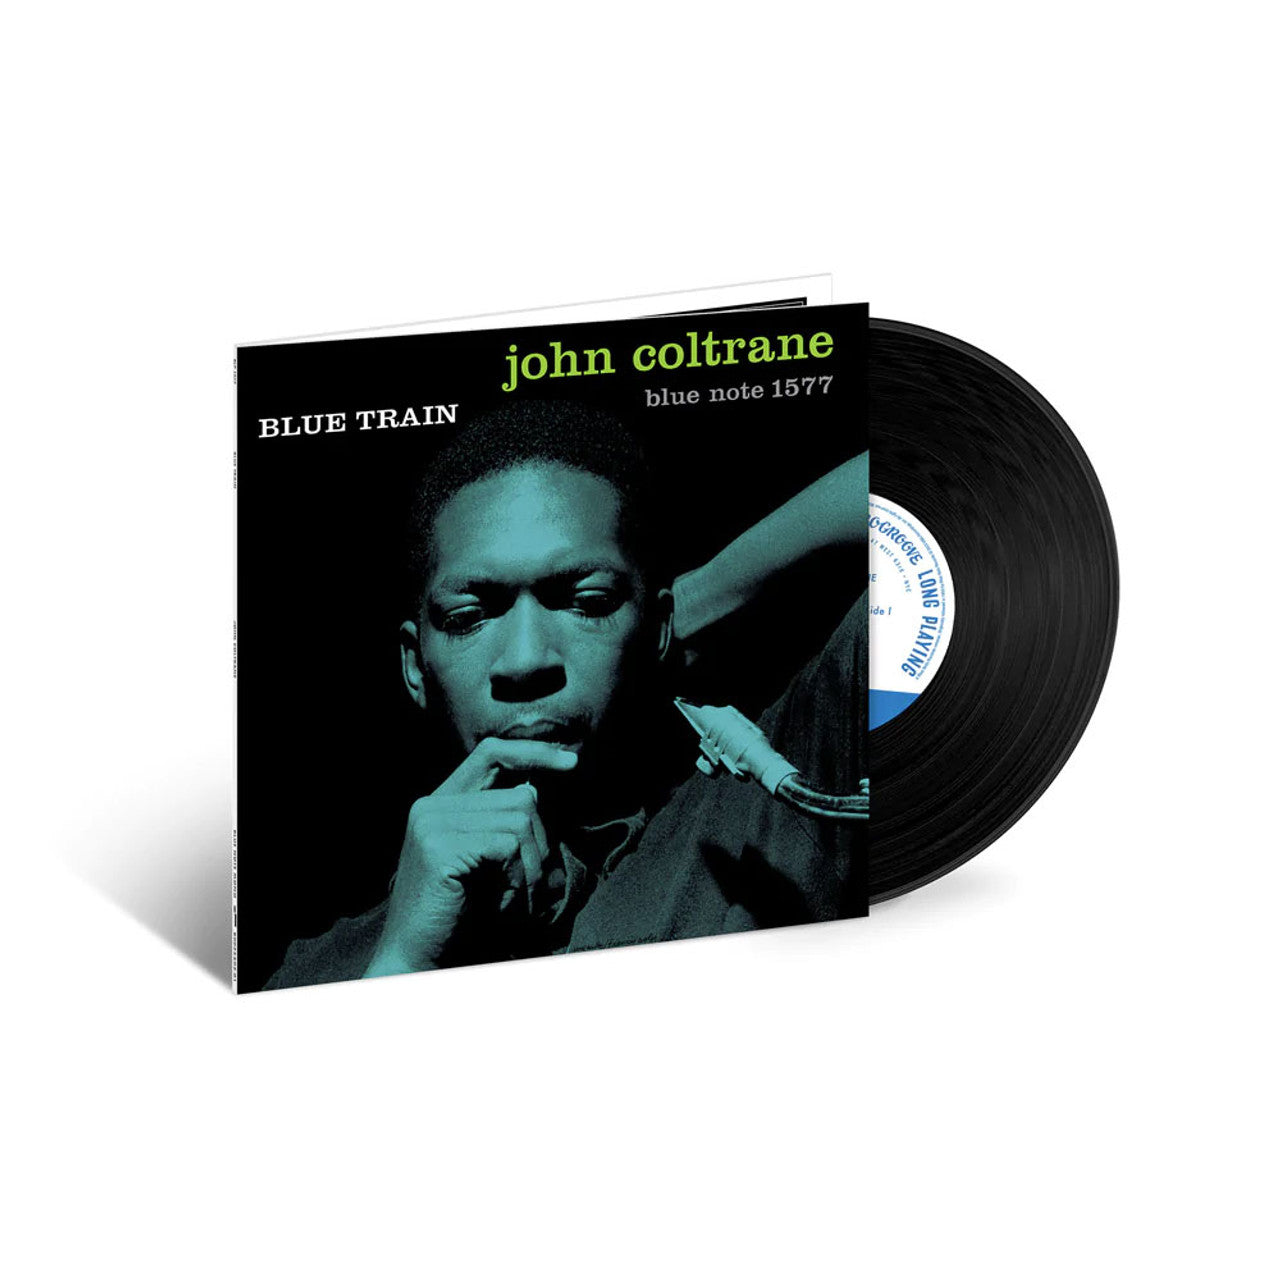 John Coltrane - Blue Train - Mono Tone Poet LP